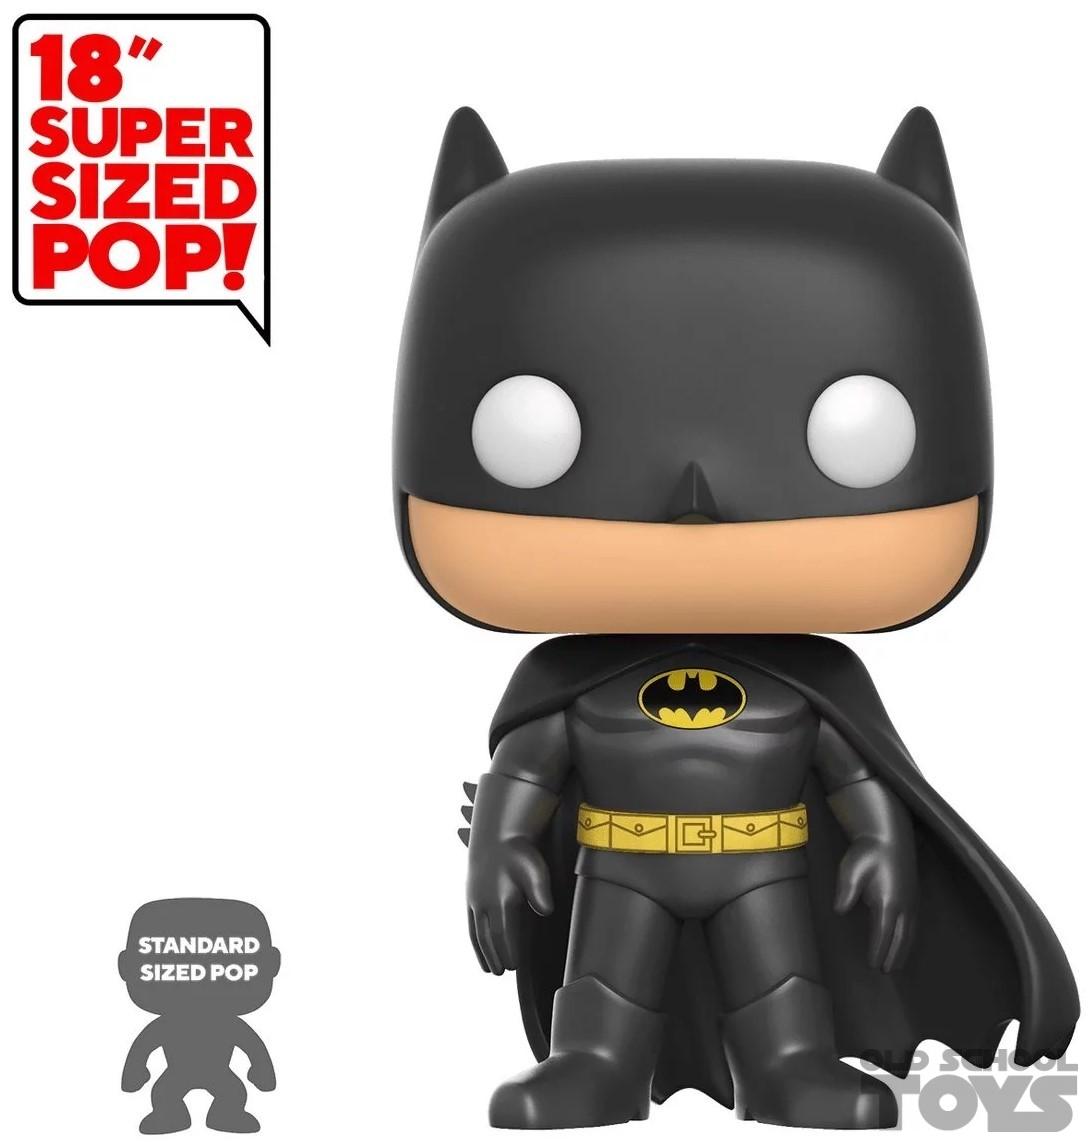 Batman super sized Pop (Funko) 18 inches (46 centimeters) | Old School